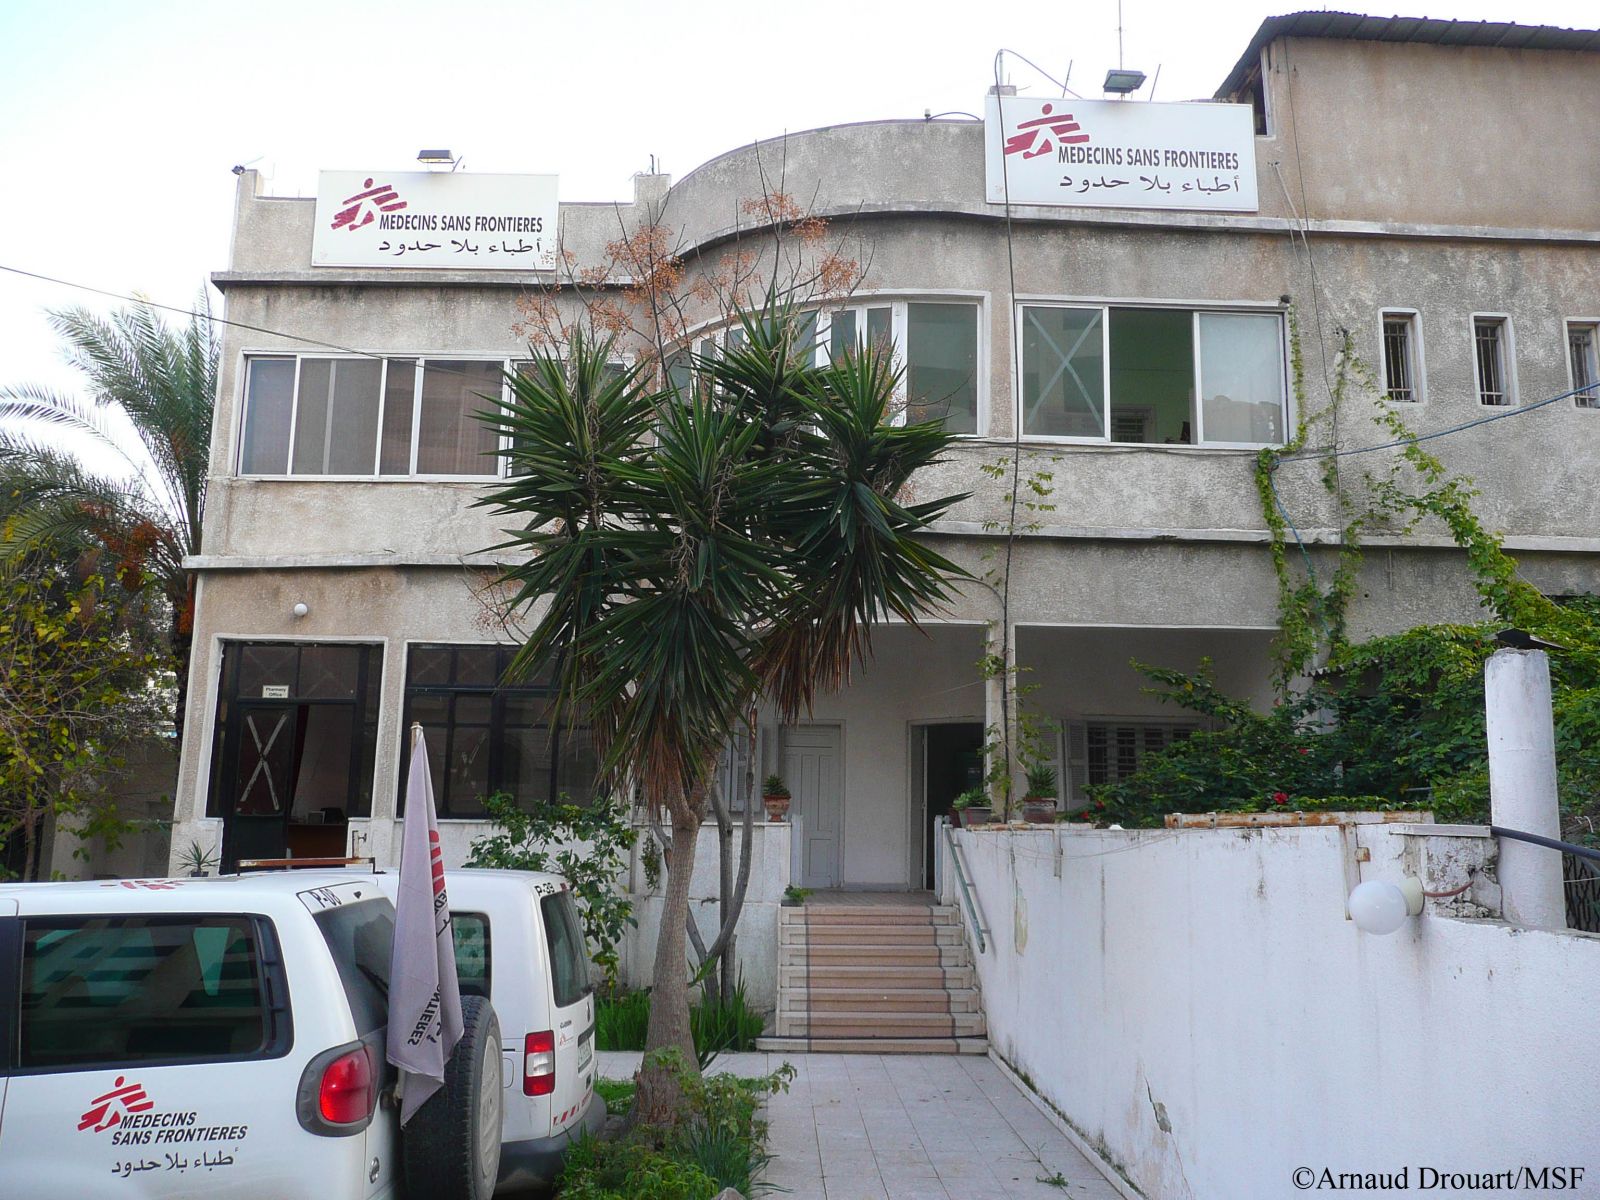  가자지구 국경없는의사회 사무실